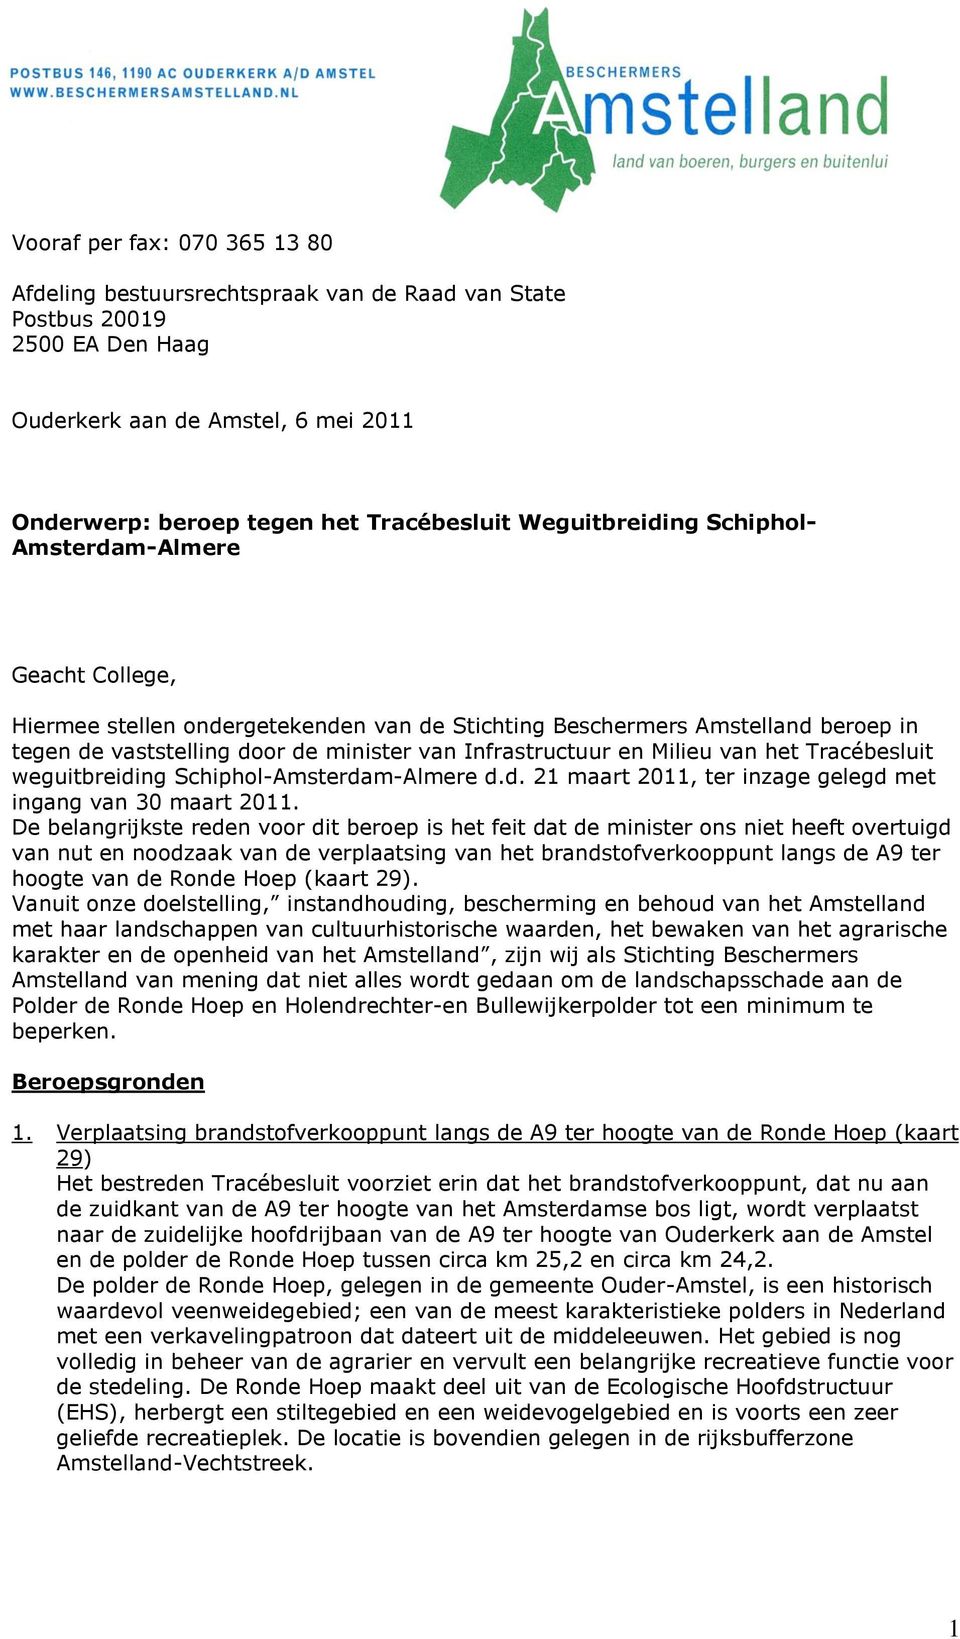 en Milieu van het Tracébesluit weguitbreiding Schiphol-Amsterdam-Almere d.d. 21 maart 2011, ter inzage gelegd met ingang van 30 maart 2011.